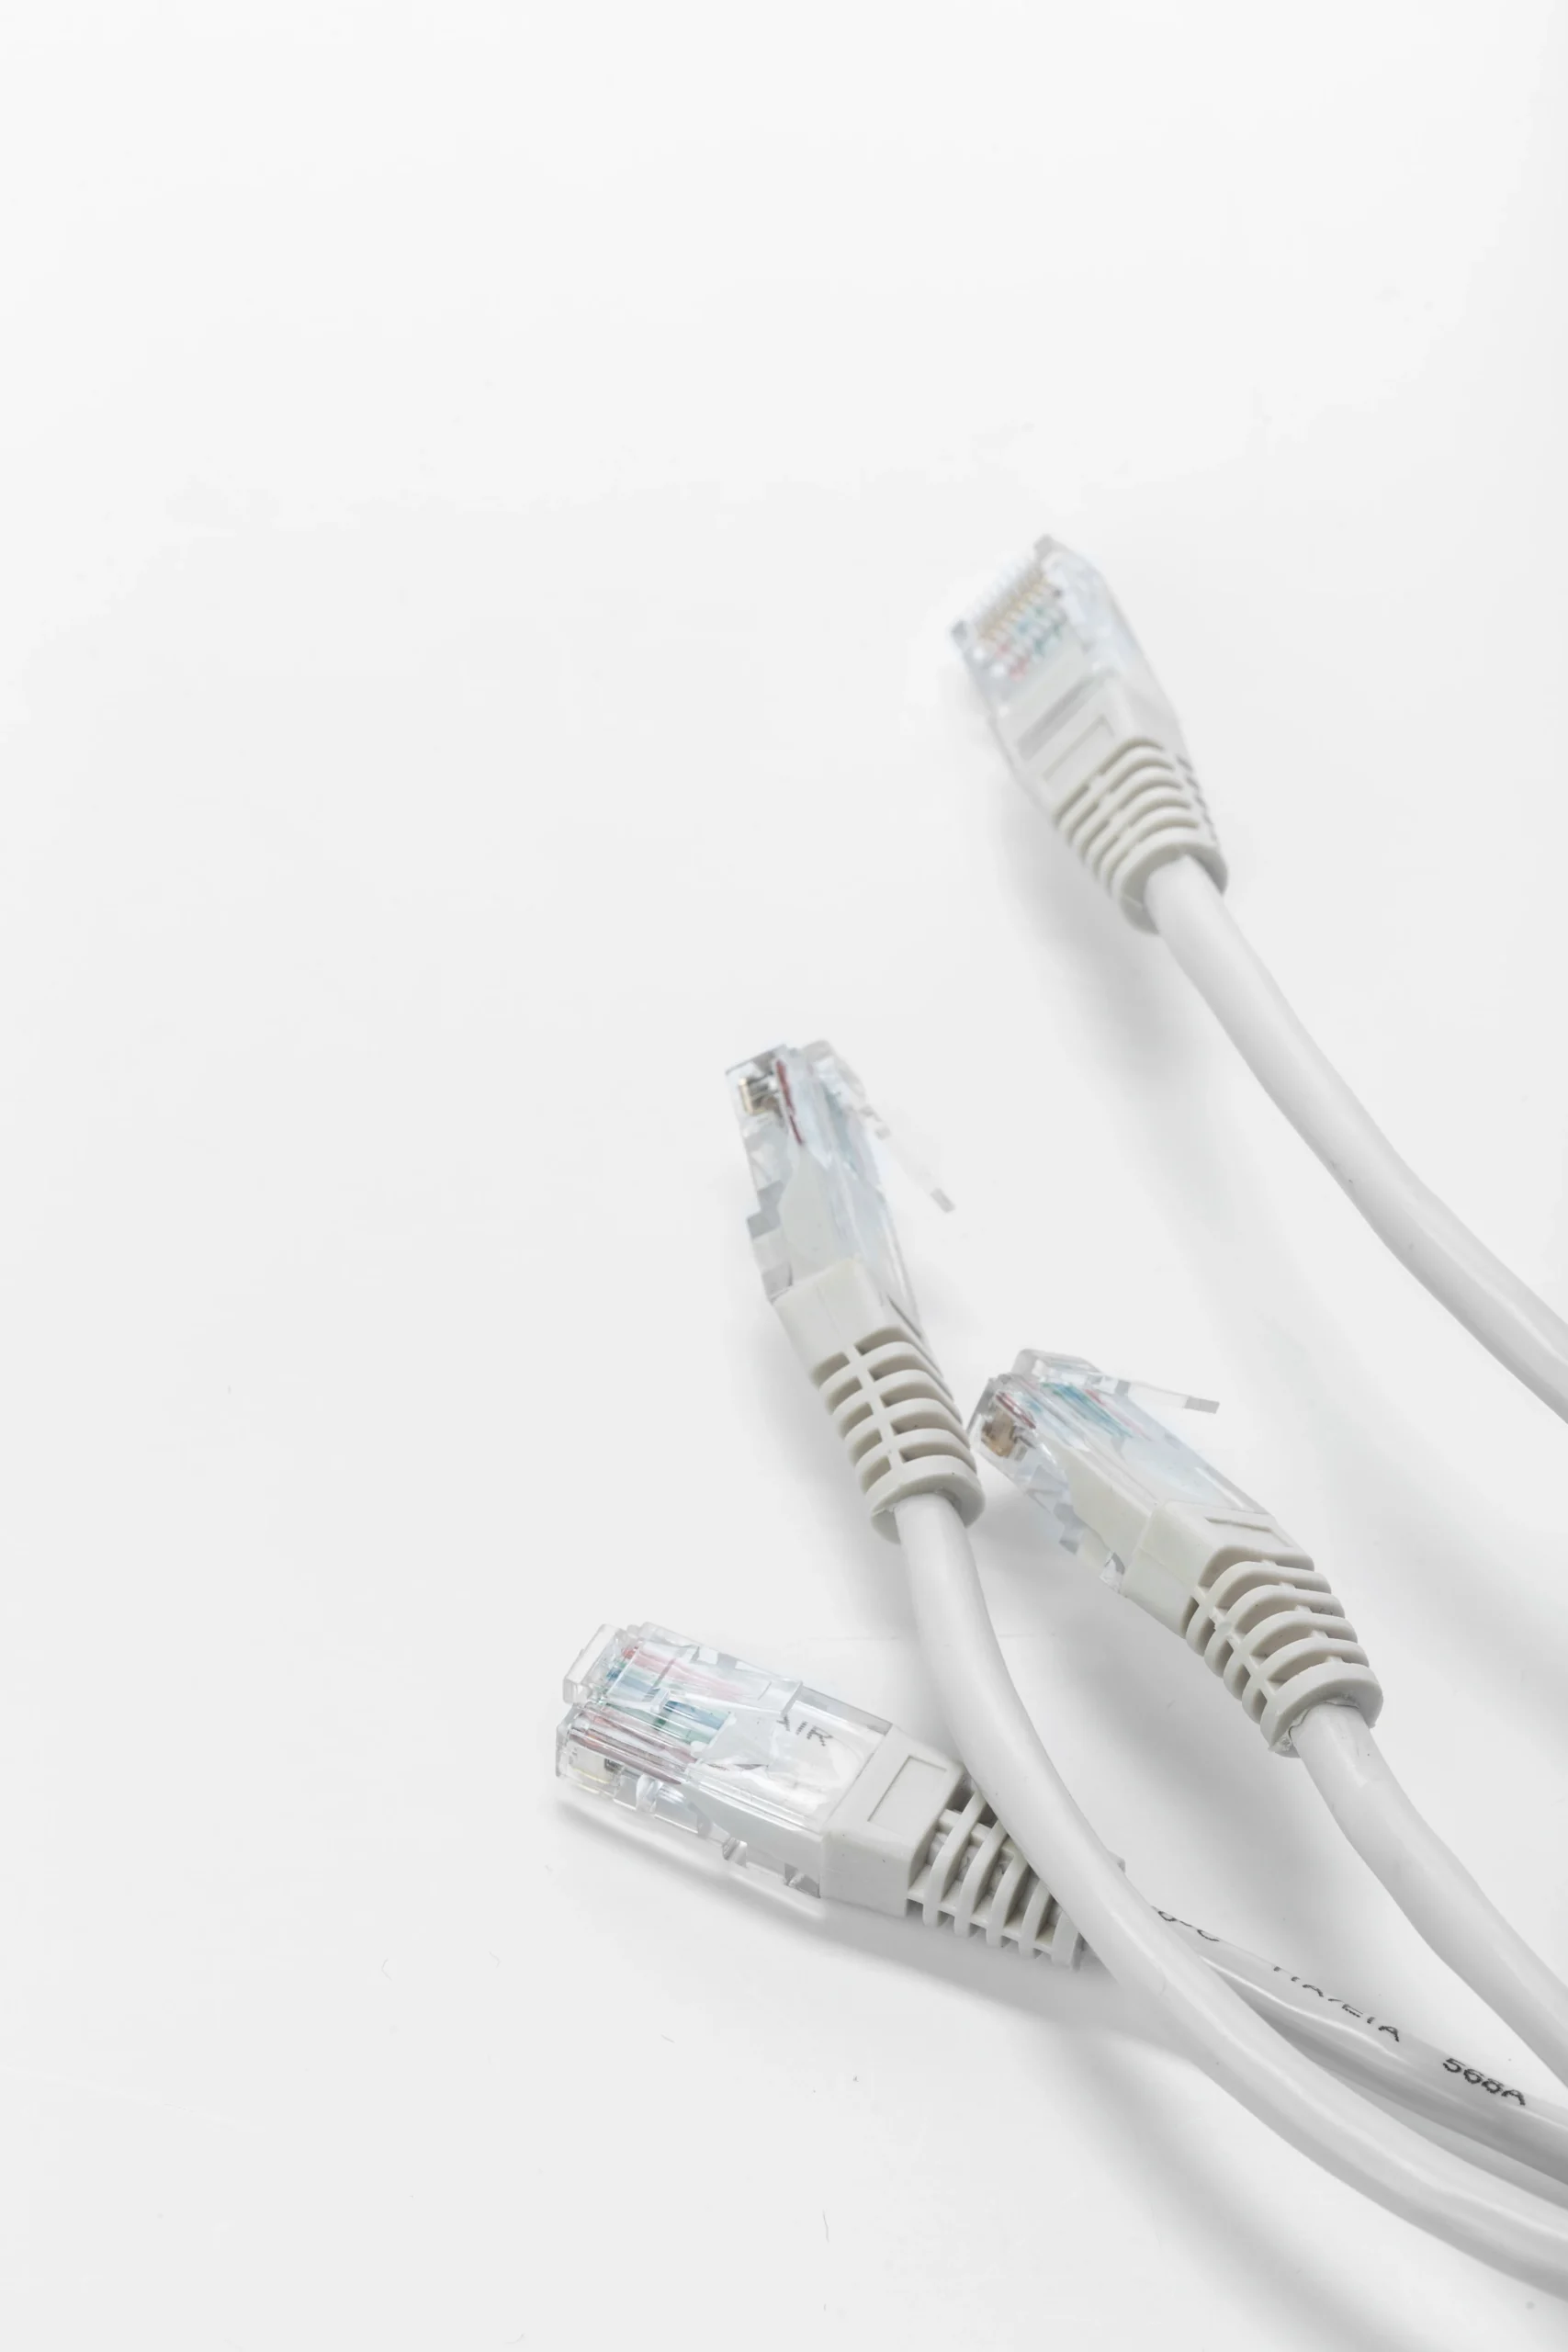 Kable Ethernet zakończone końcówką RJ45 - Zarządzanie siecią komputerową